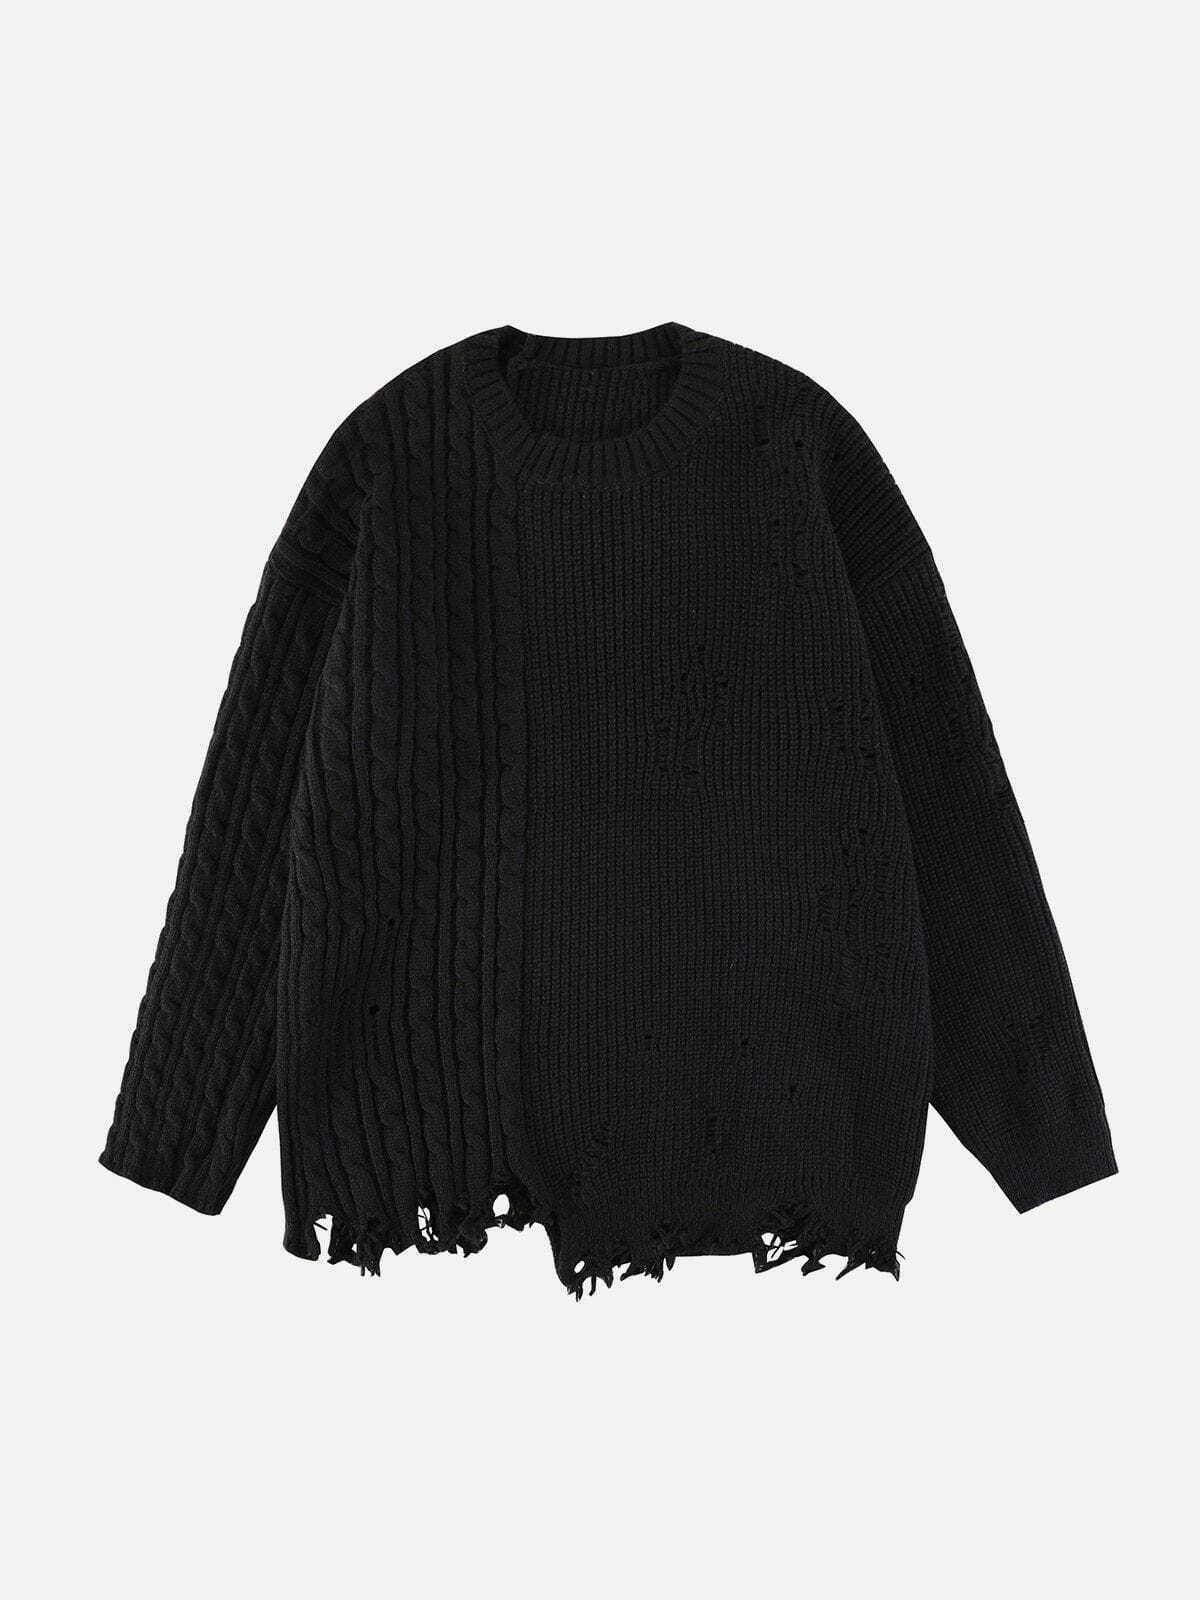 patchwork twist knit sweater edgy y2k streetwear 4504